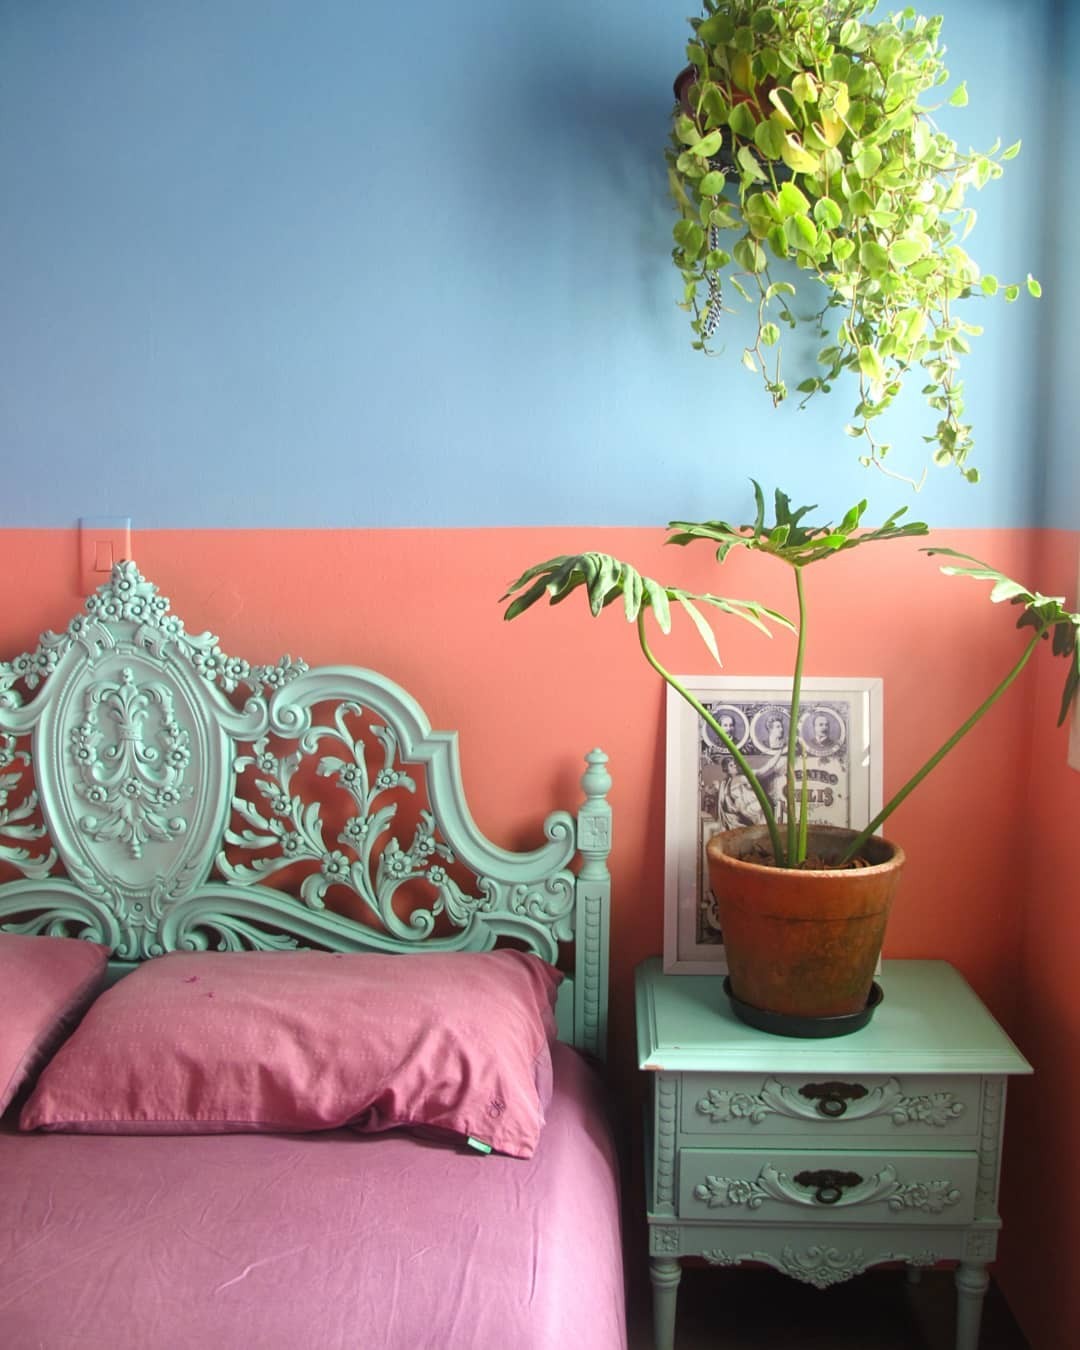 Décor do dia: quarto com parede bicolor e vasos de plantas  (Foto: Instagram/@cenourasfrescas)